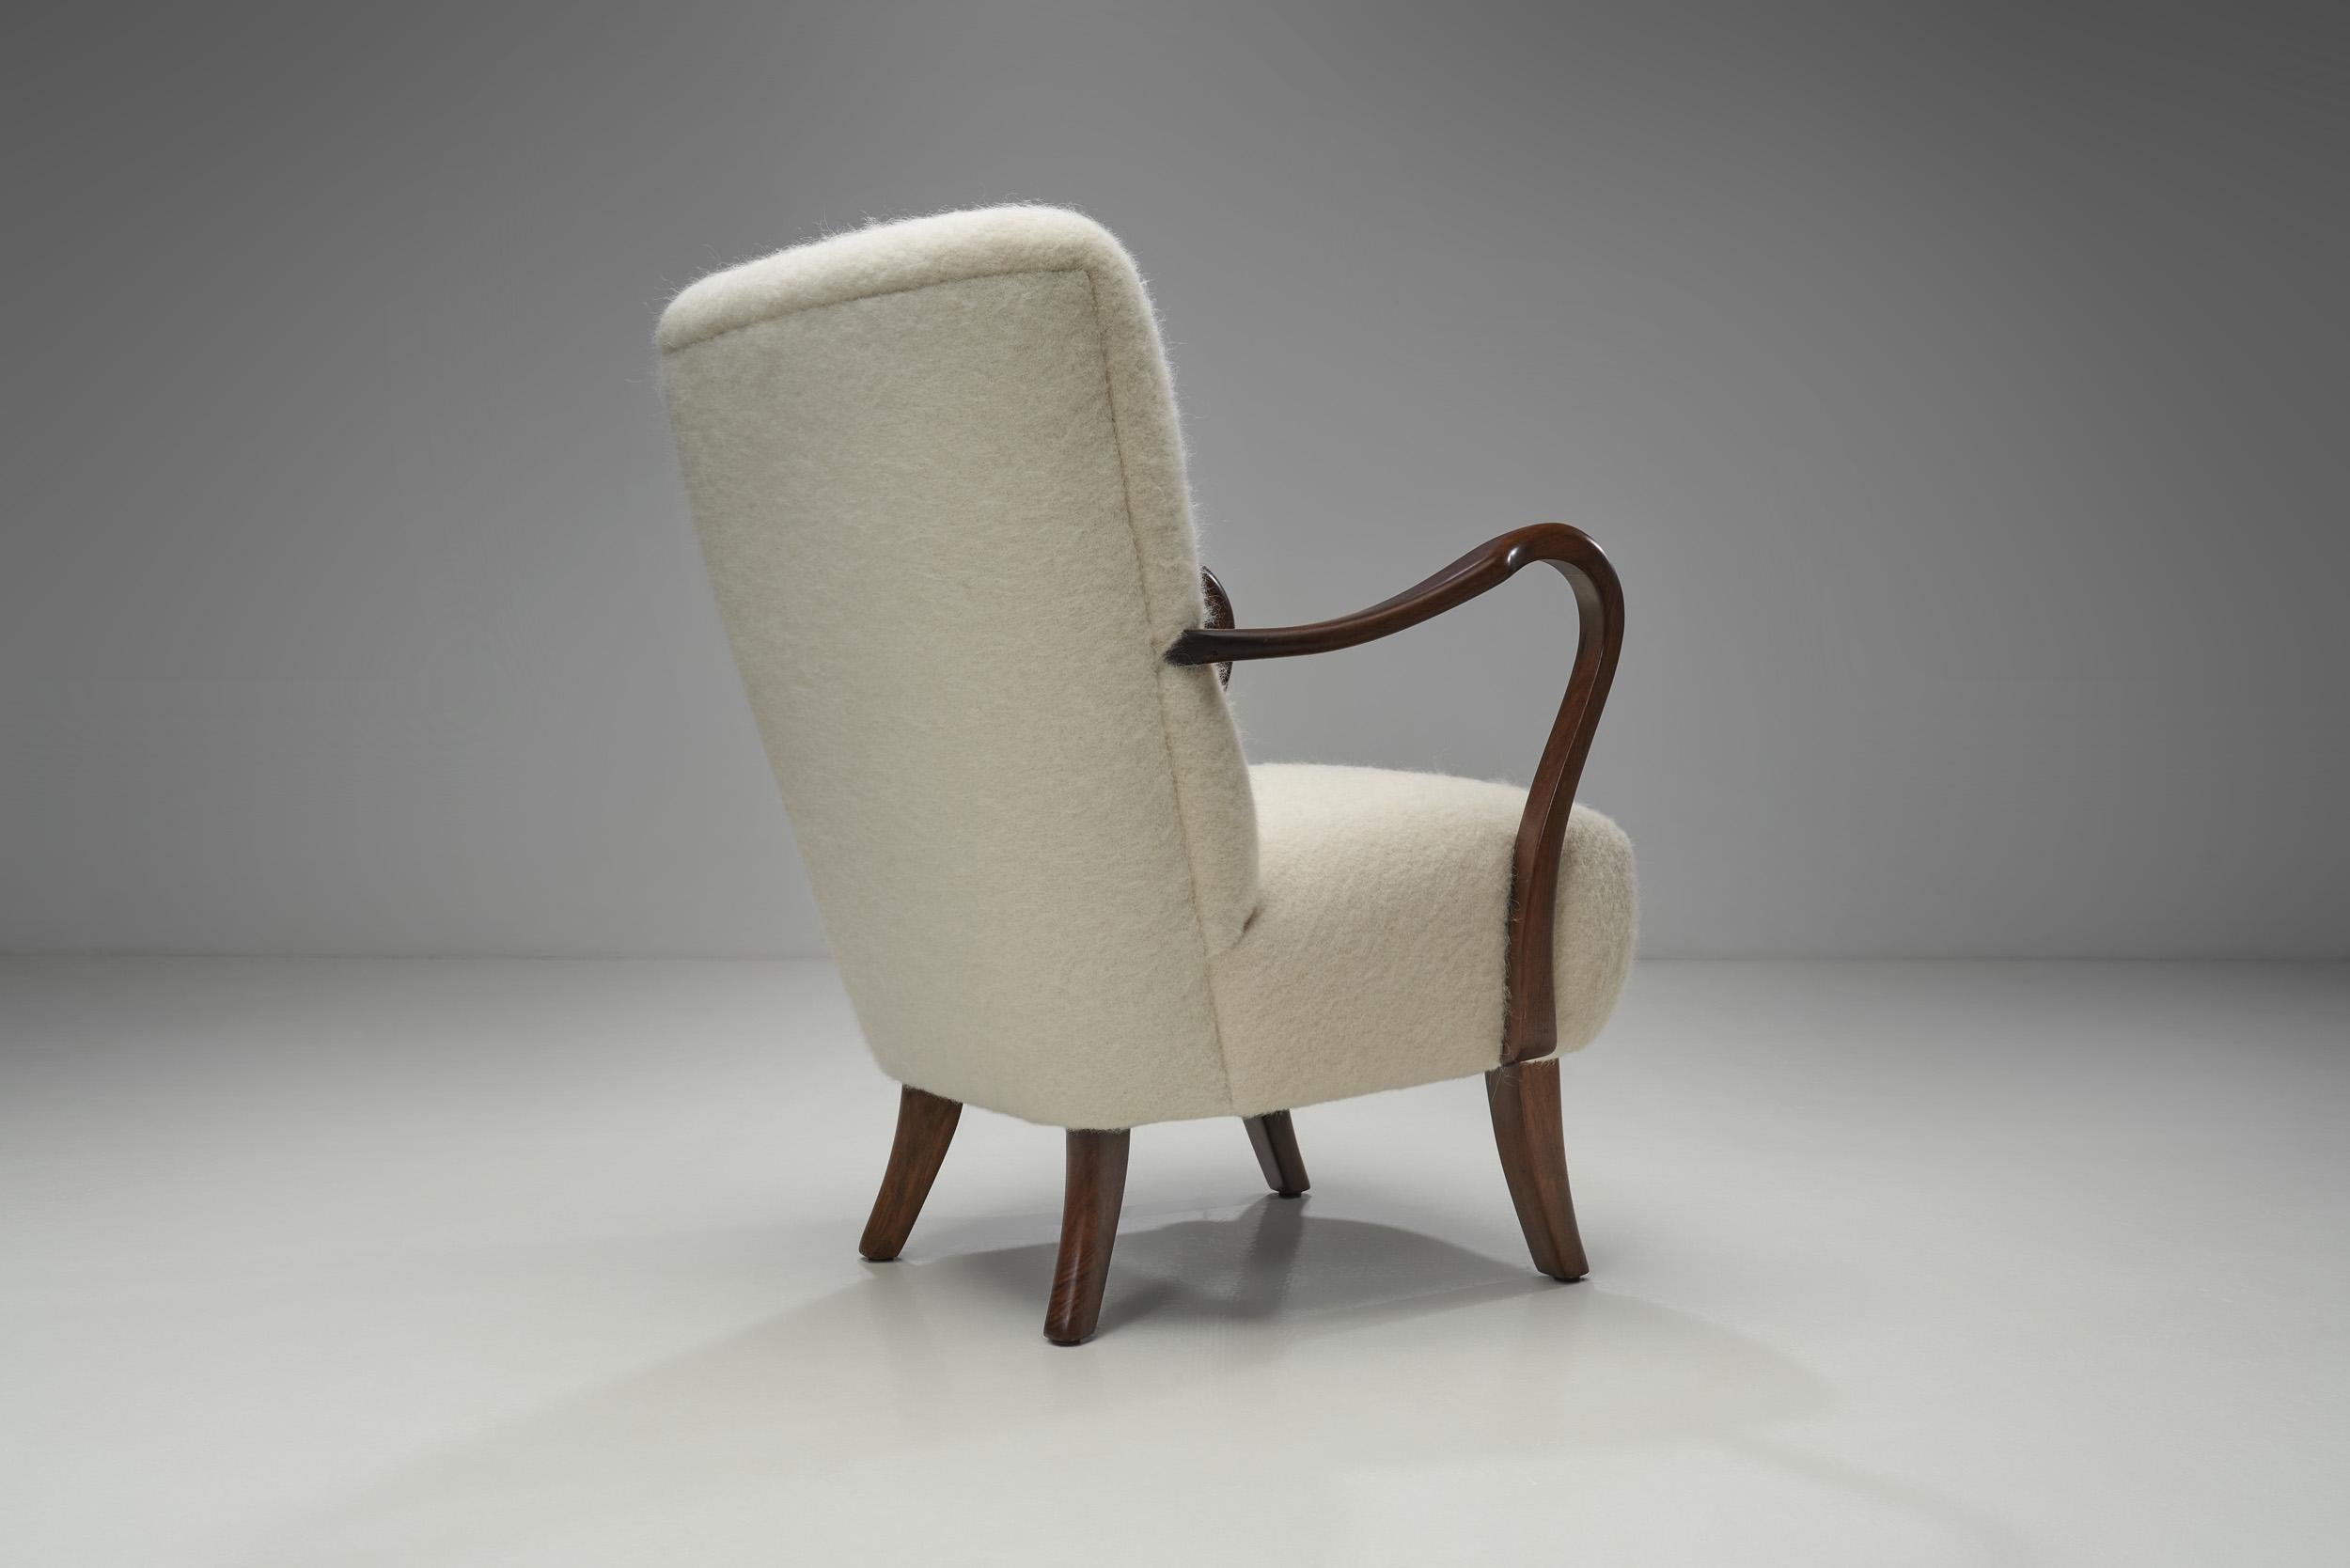 Fabric Alfred Christensen Upholstered Armchair for Slagelse Møbelfabrik, Denmark 1940s For Sale